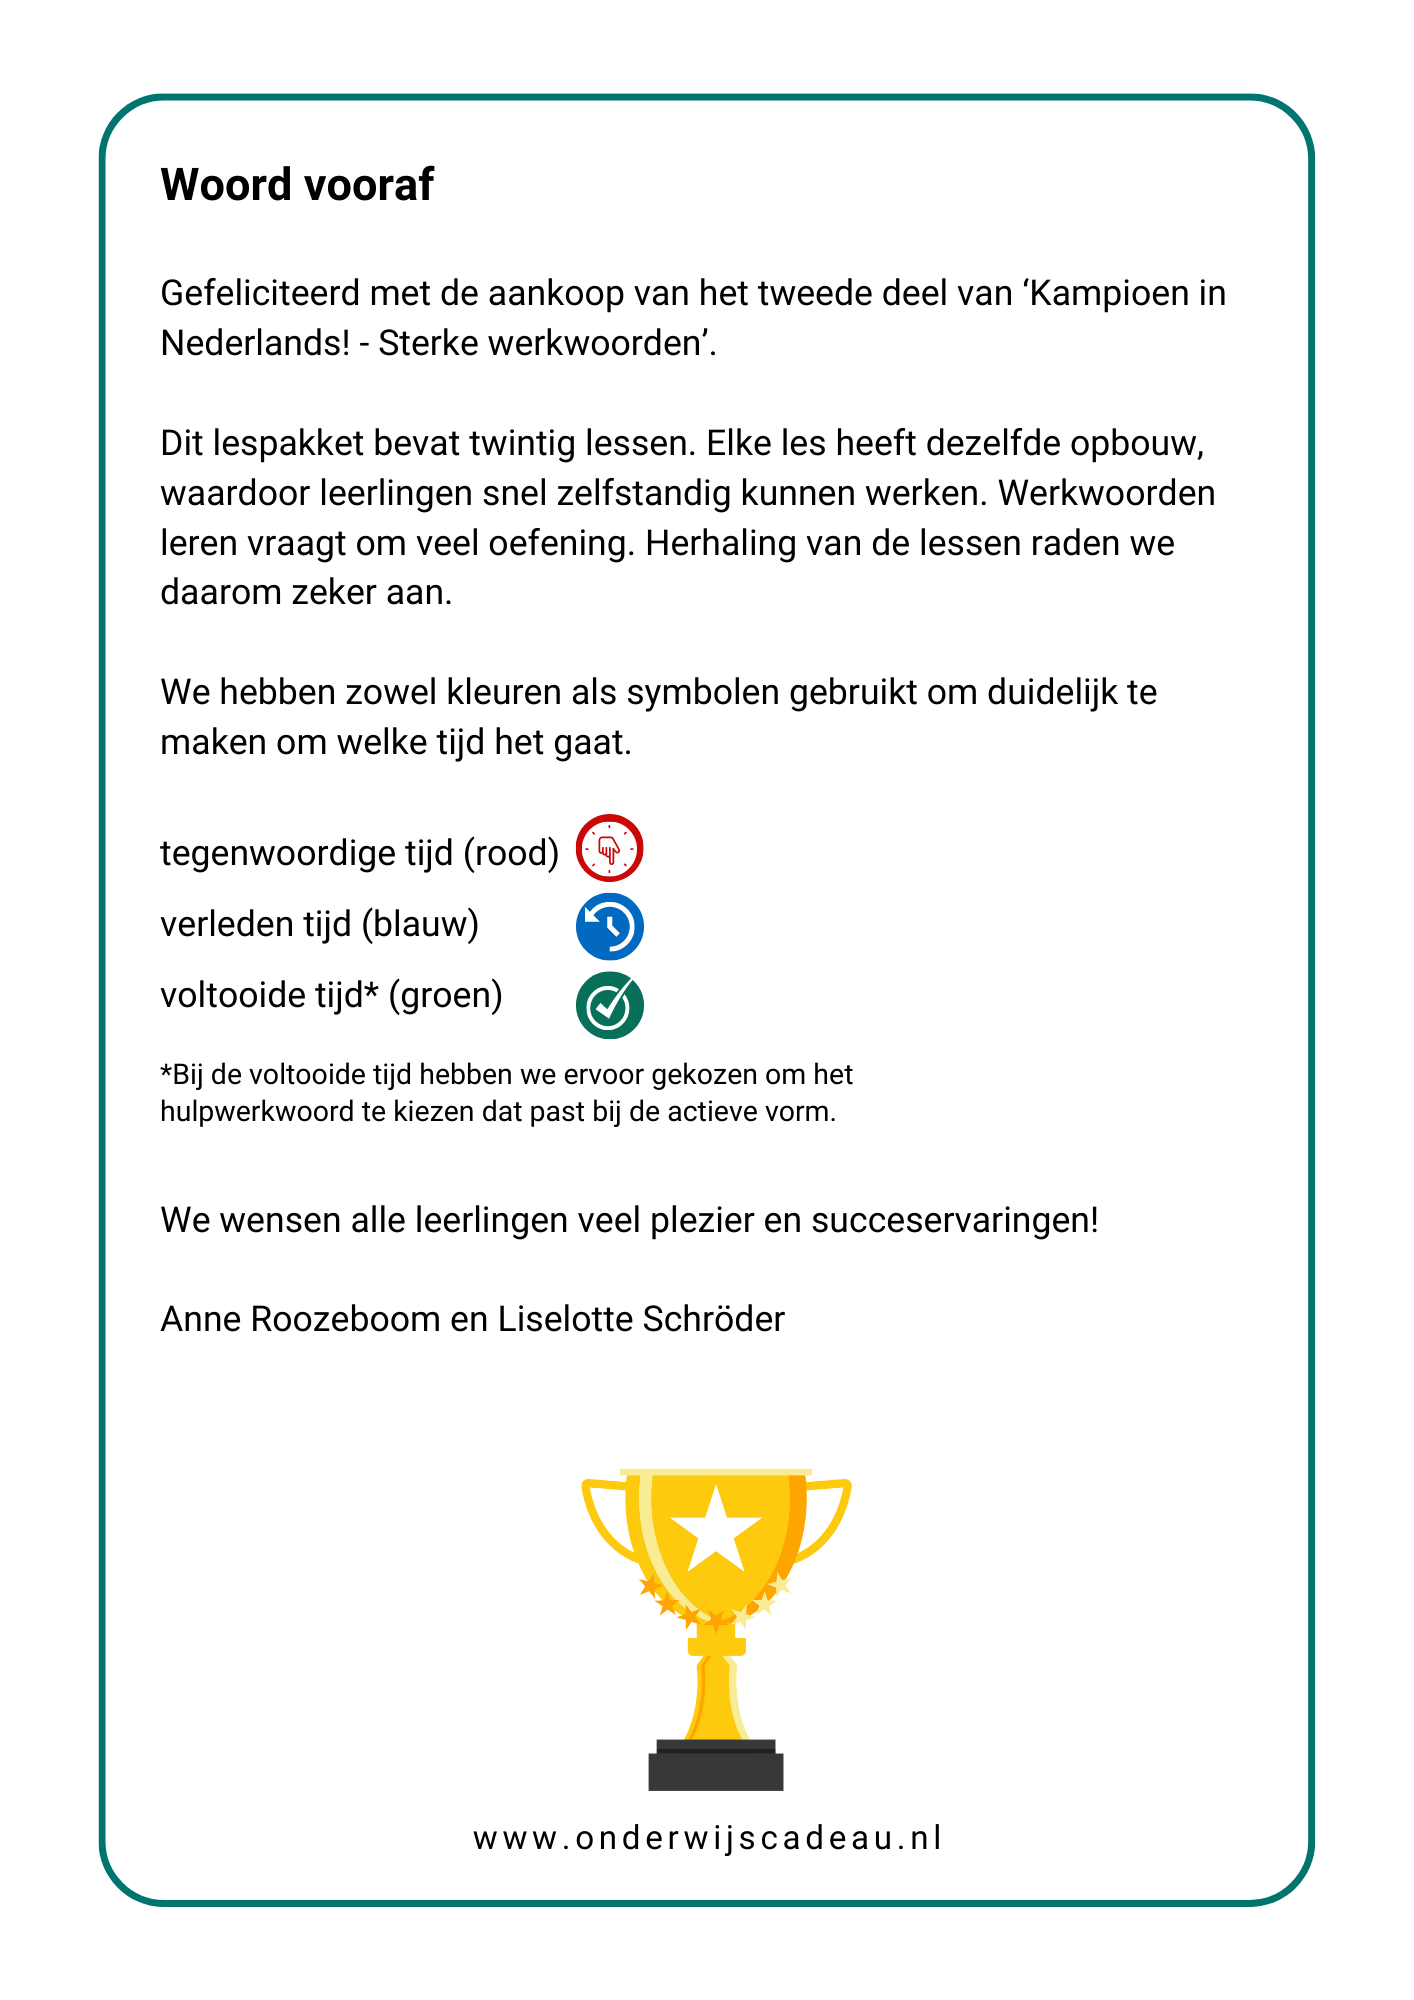 Kampioen in Nederlands! - Sterke werkwoorden - Deel 2